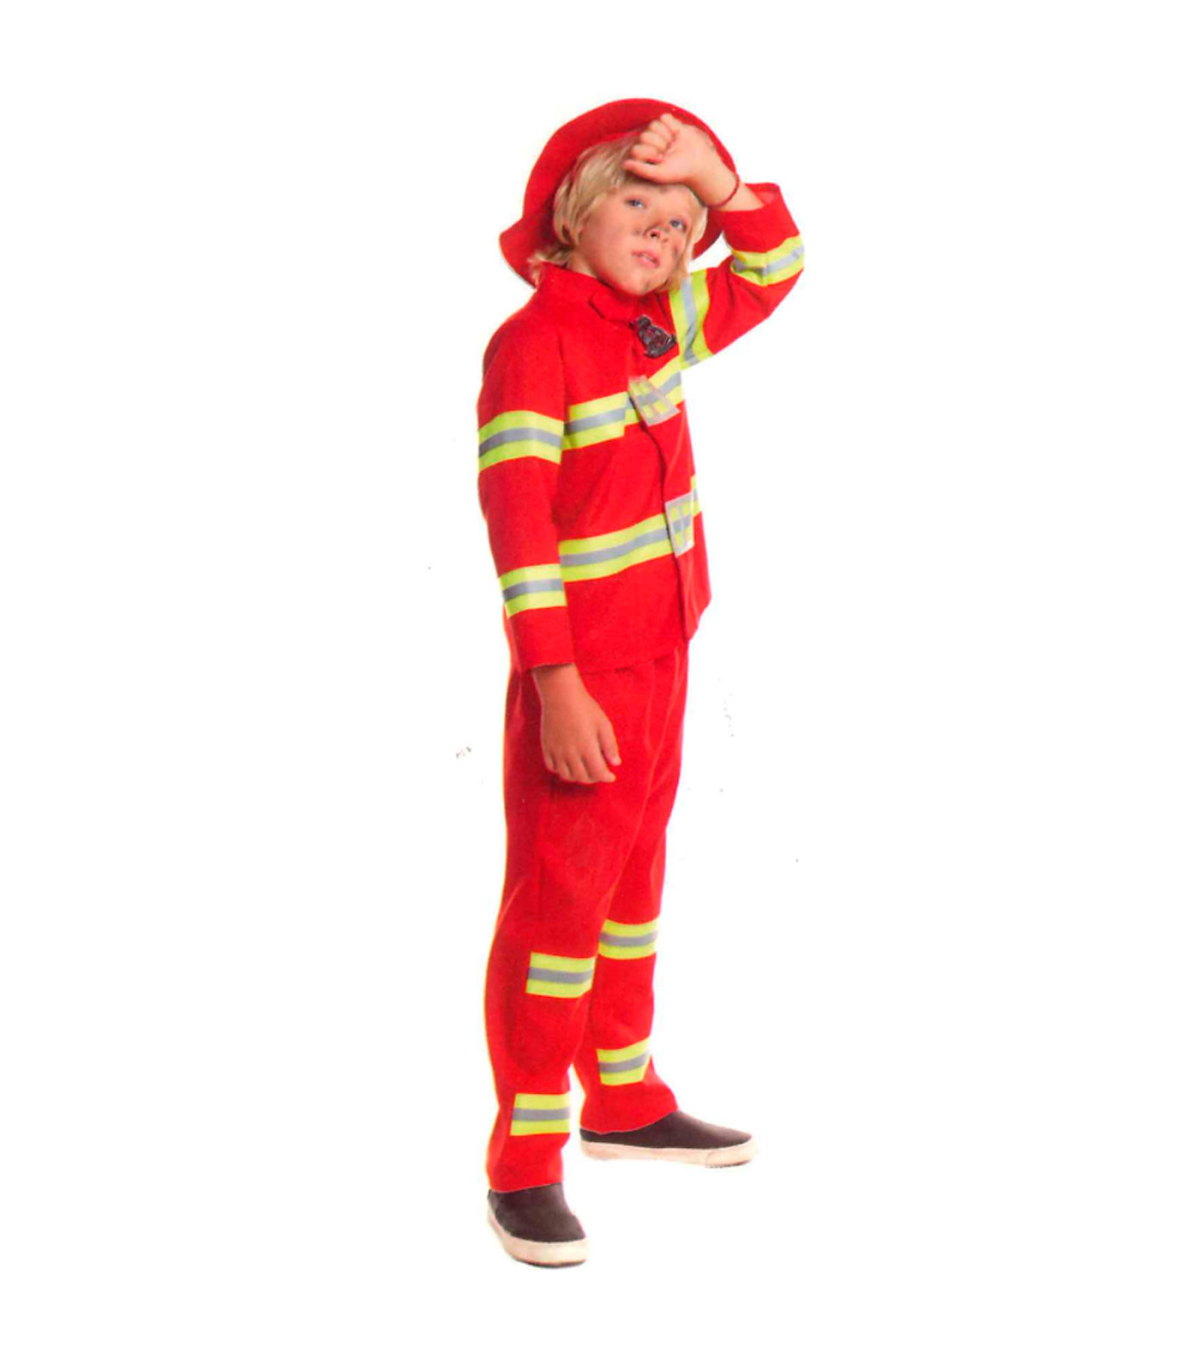 Tradineur - Disfraz de bombero infantil unisex - Fabricado en fibra  sintética - Incluye camiseta, pantalón y gorro - Carnaval, H